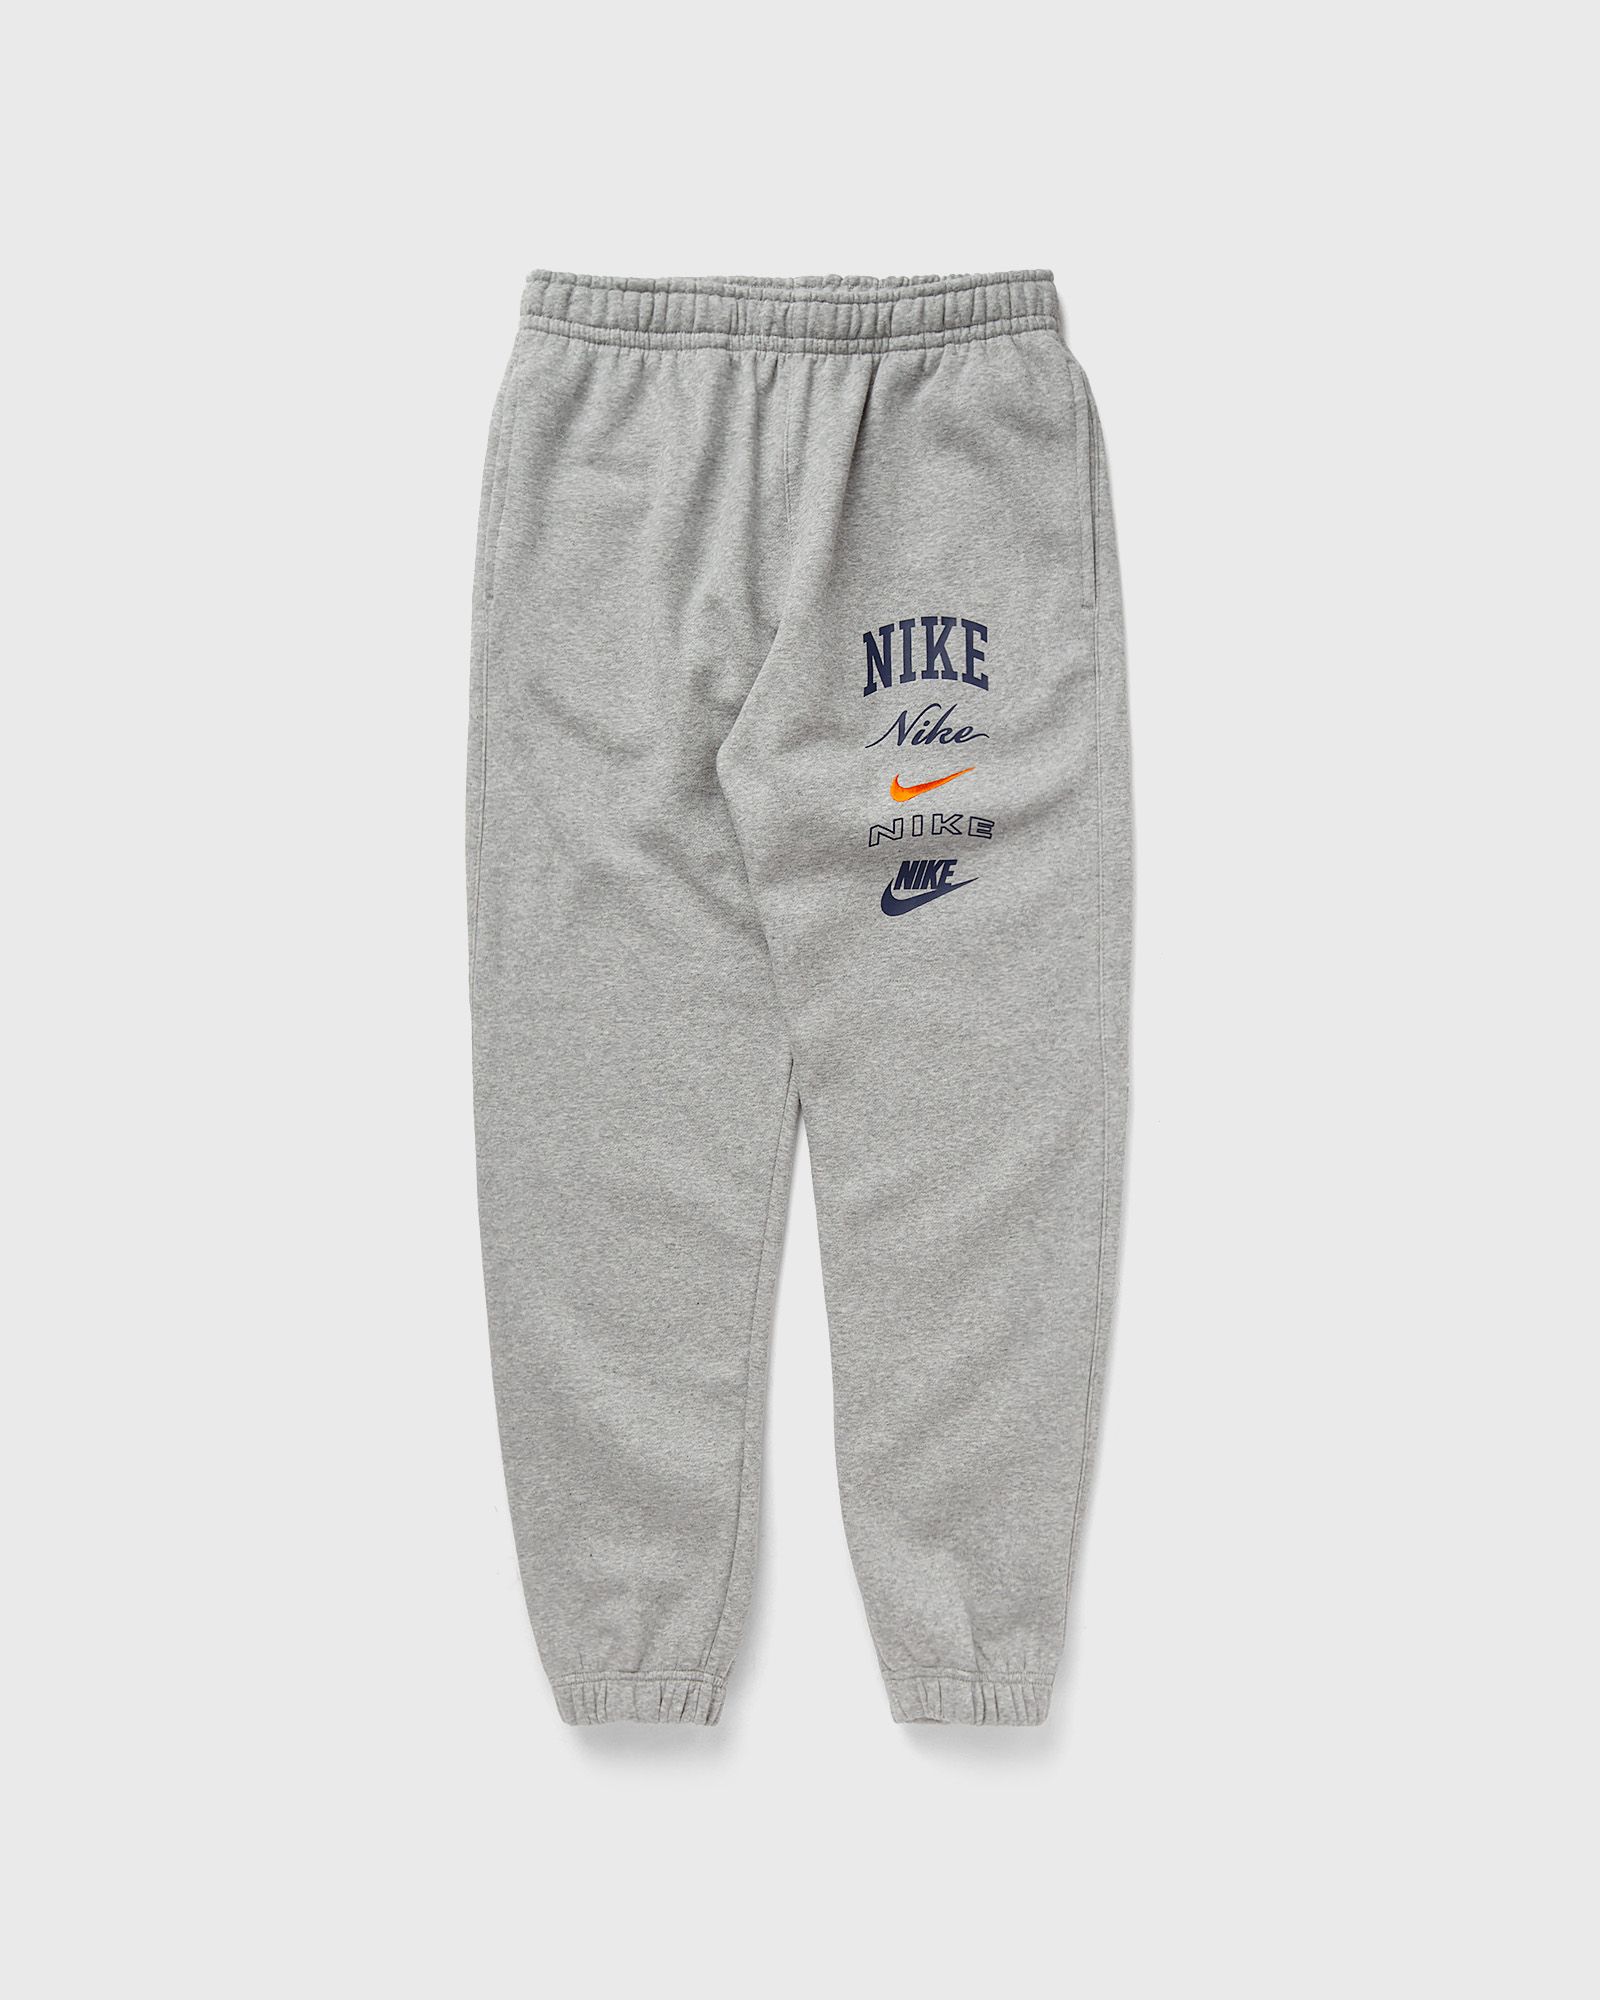 Nike - club fleece cuffed pant men sweatpants grey in größe:l